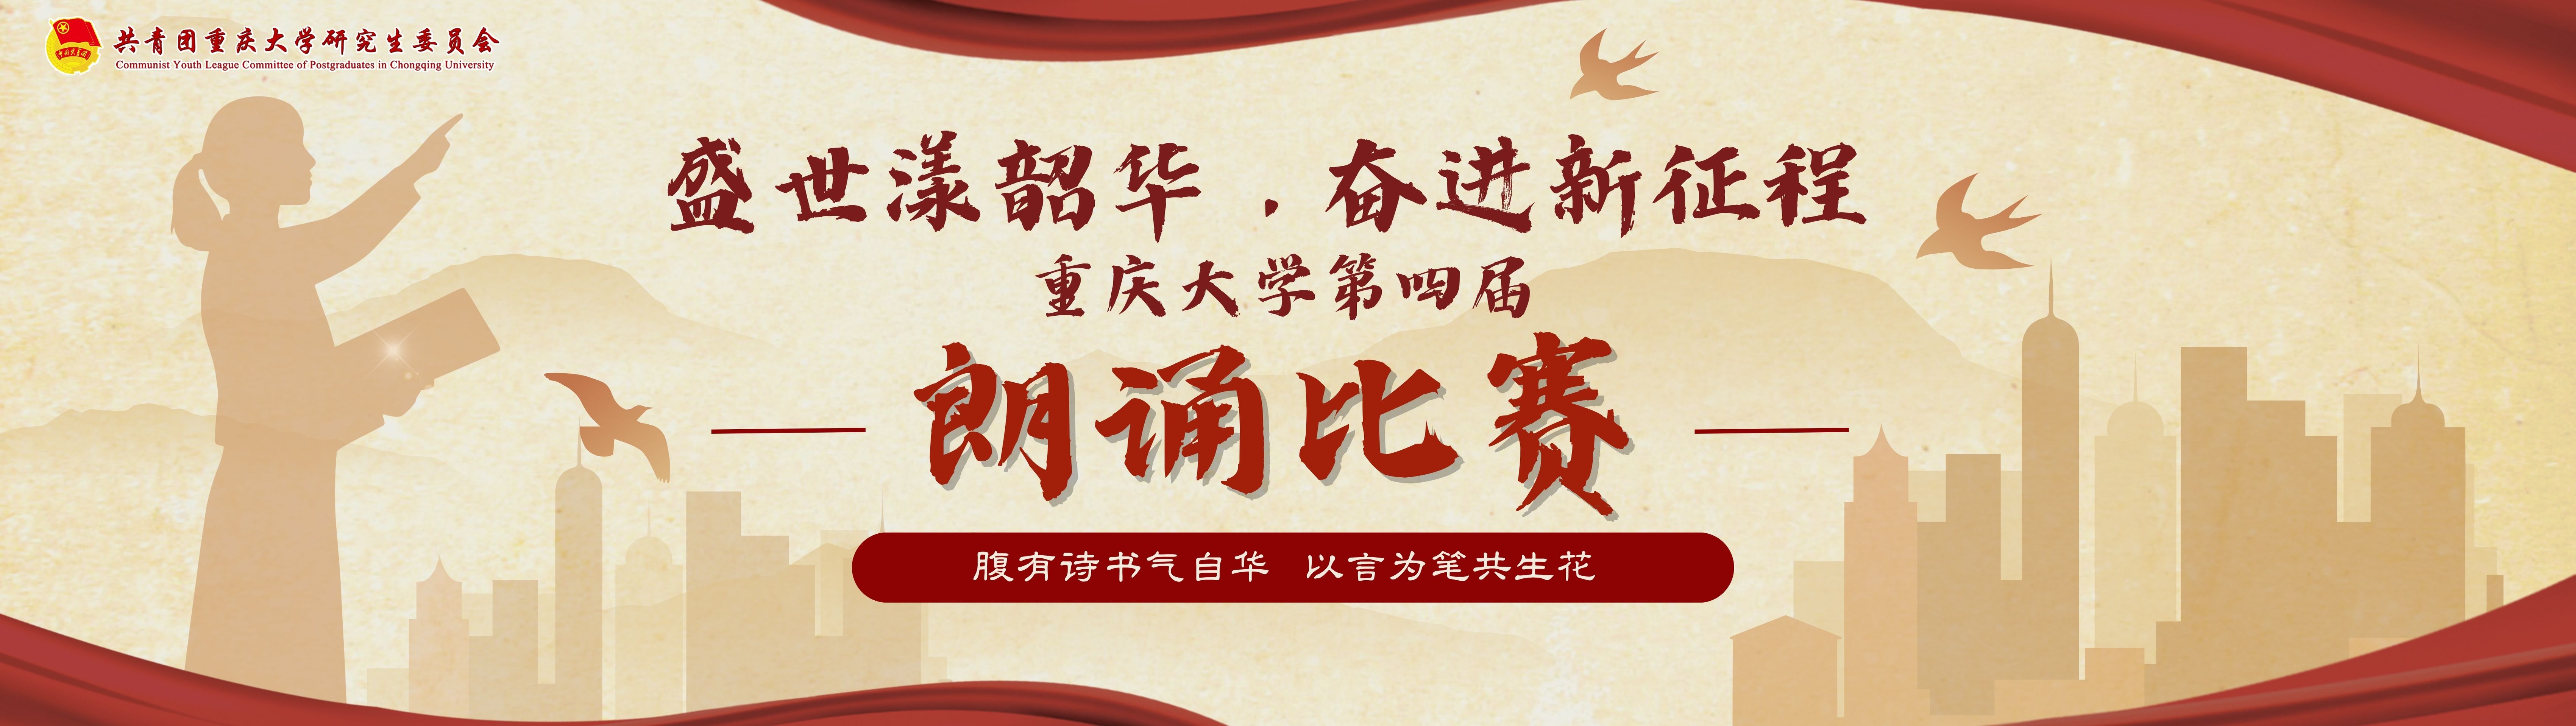 关于开展重庆大学第四届朗诵比赛的通知